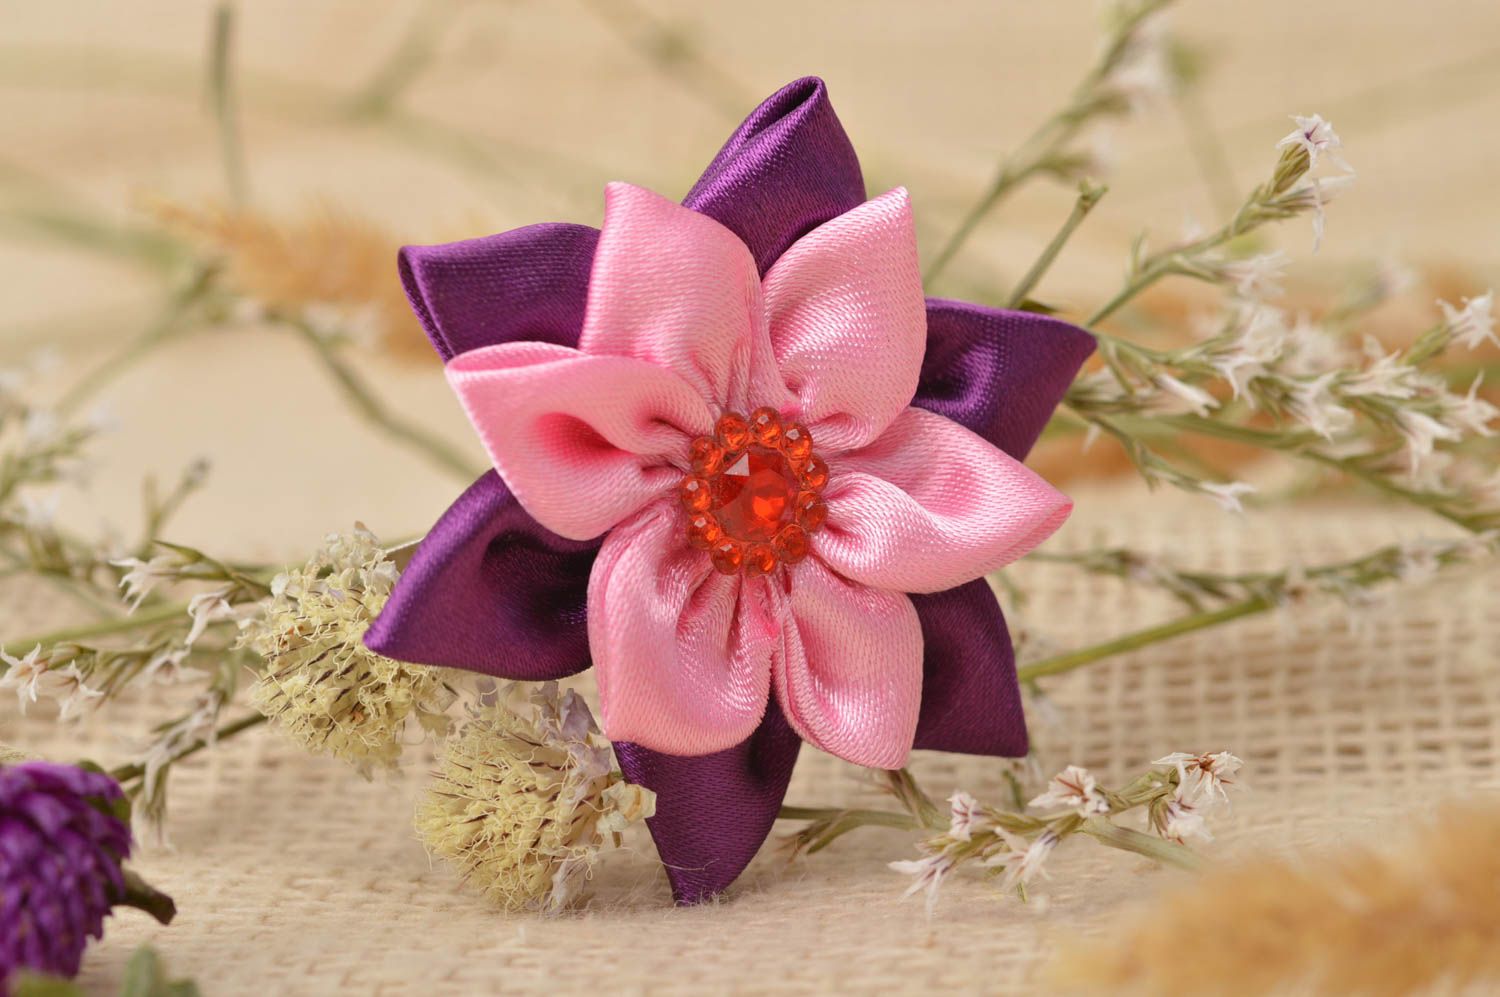 Handmade Mädchen Haarschmuck Haarspange Blume Mode Accessoire schön grell farbig foto 1